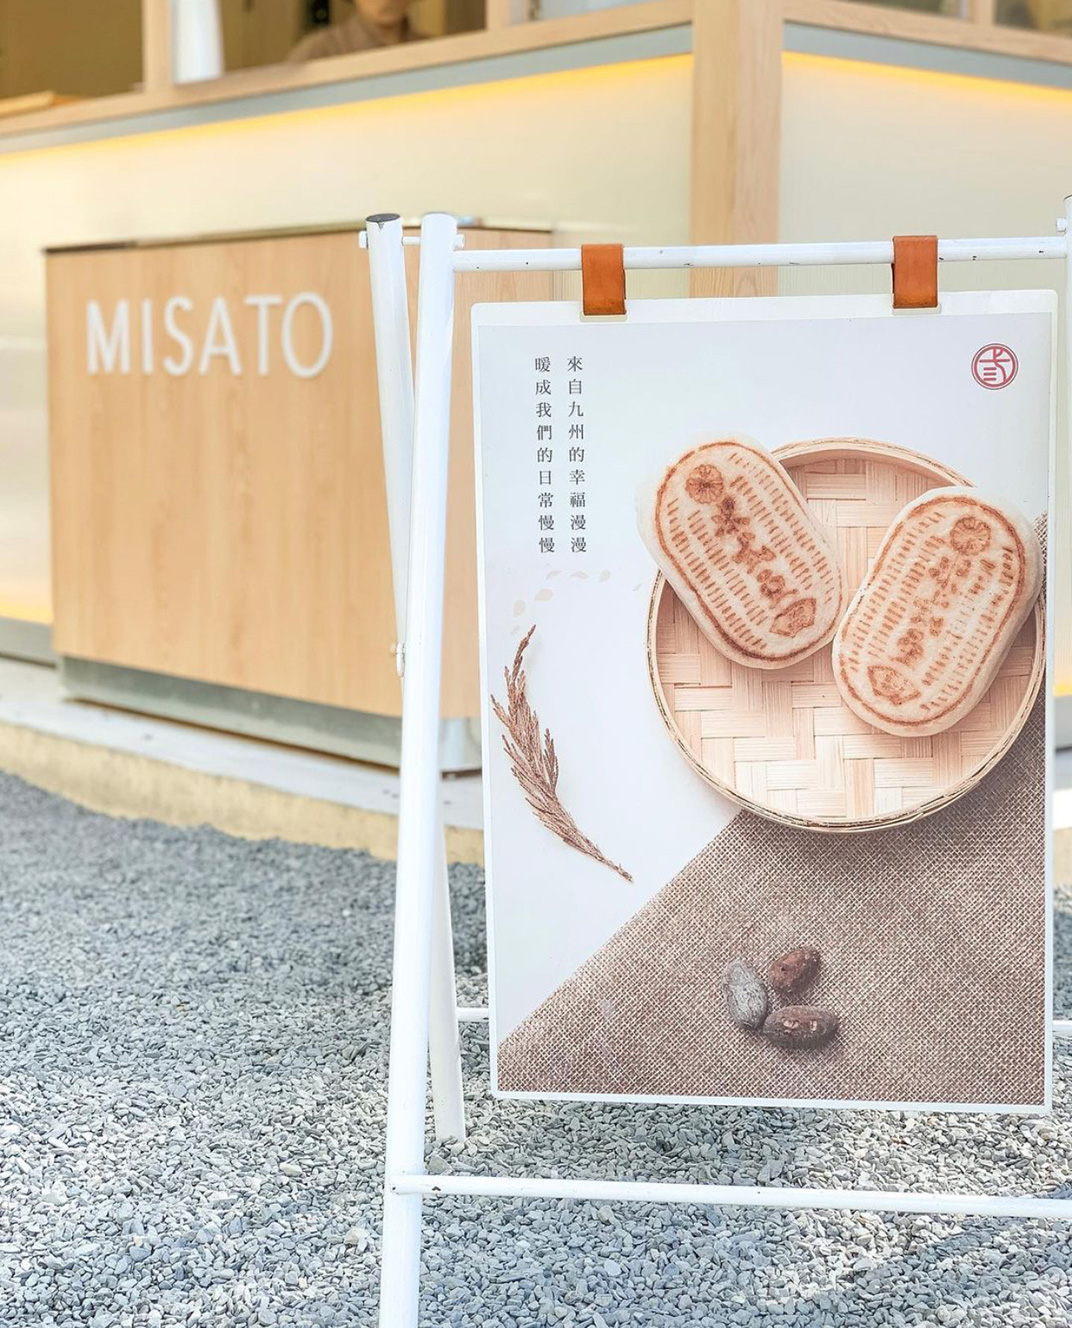 日式点心餐厅米弎豆Misat 台湾 日式 折叠窗 浅色 logo设计 vi设计 空间设计